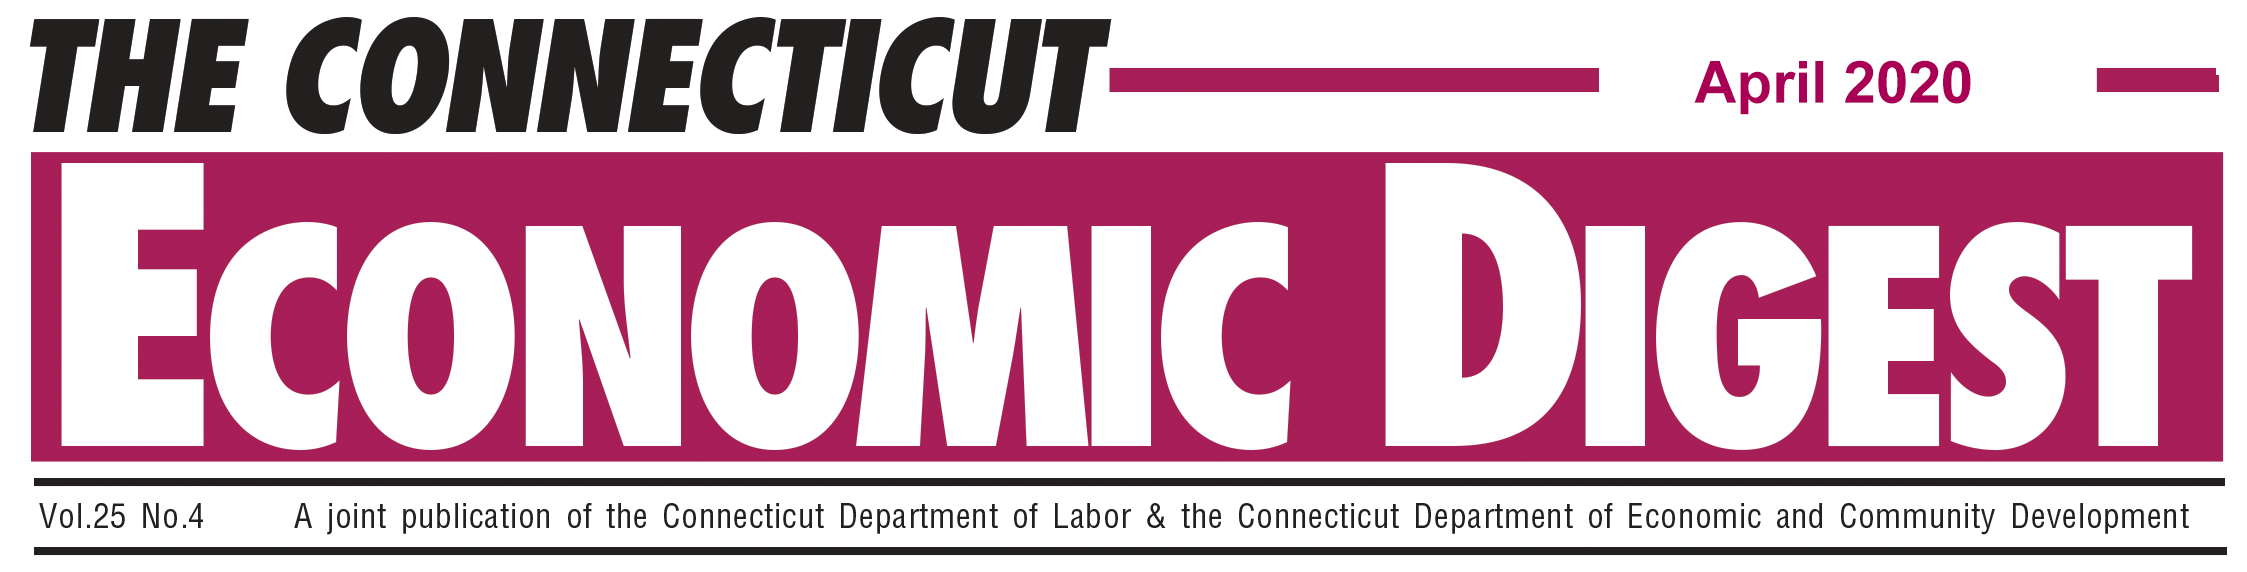 April 2020 Connecticut Economic Digest